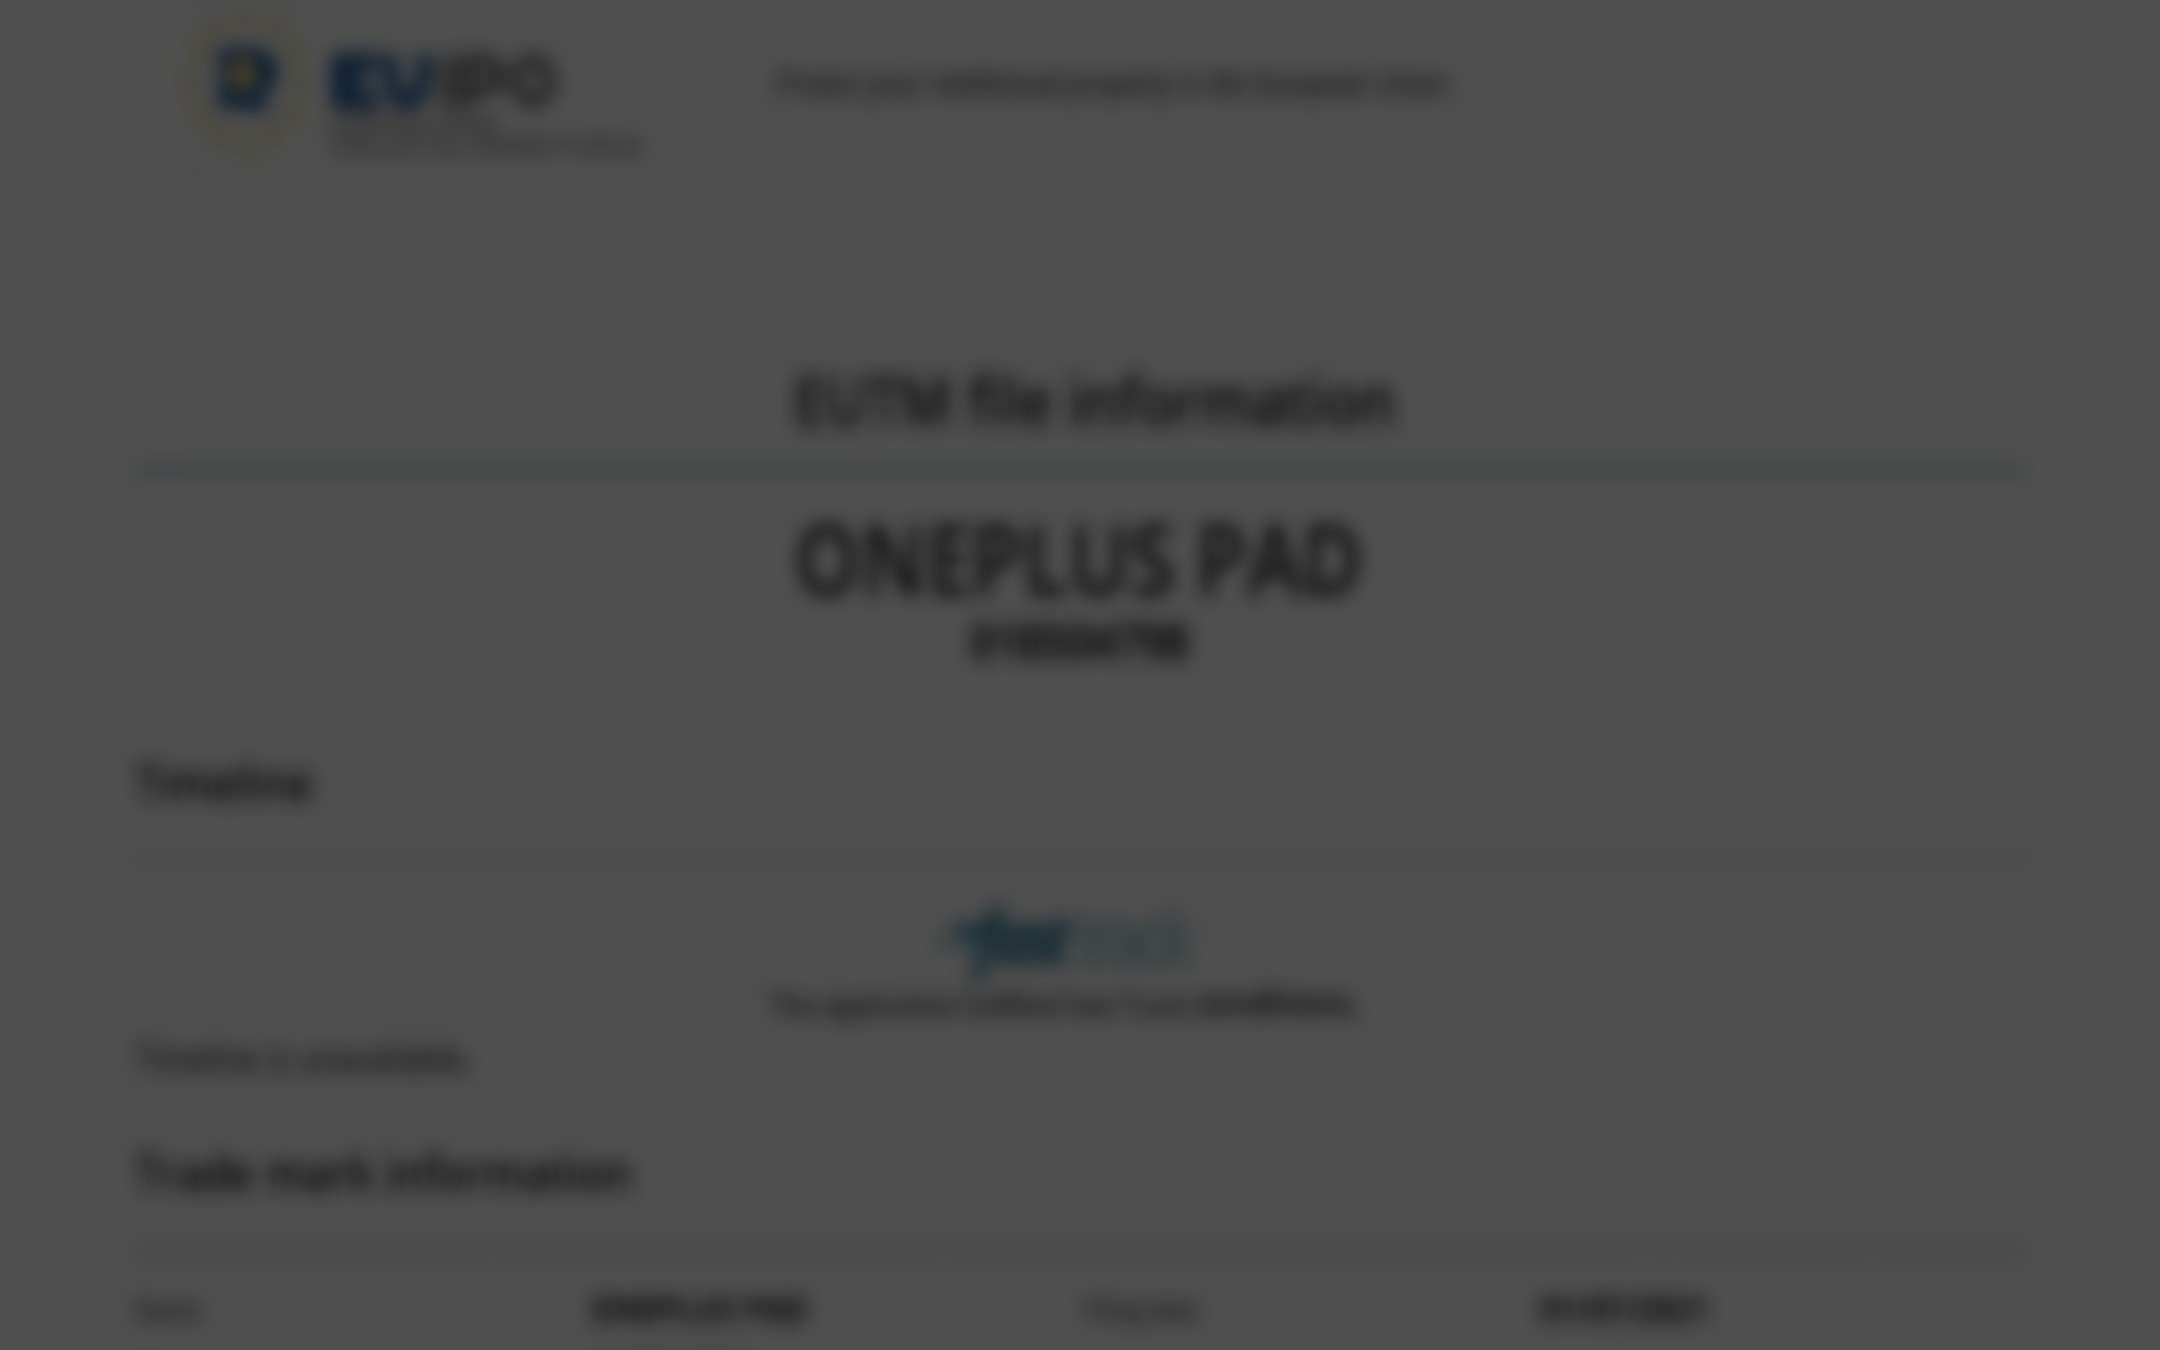 OnePlus pronto ad entrare nel mercato dei tablet